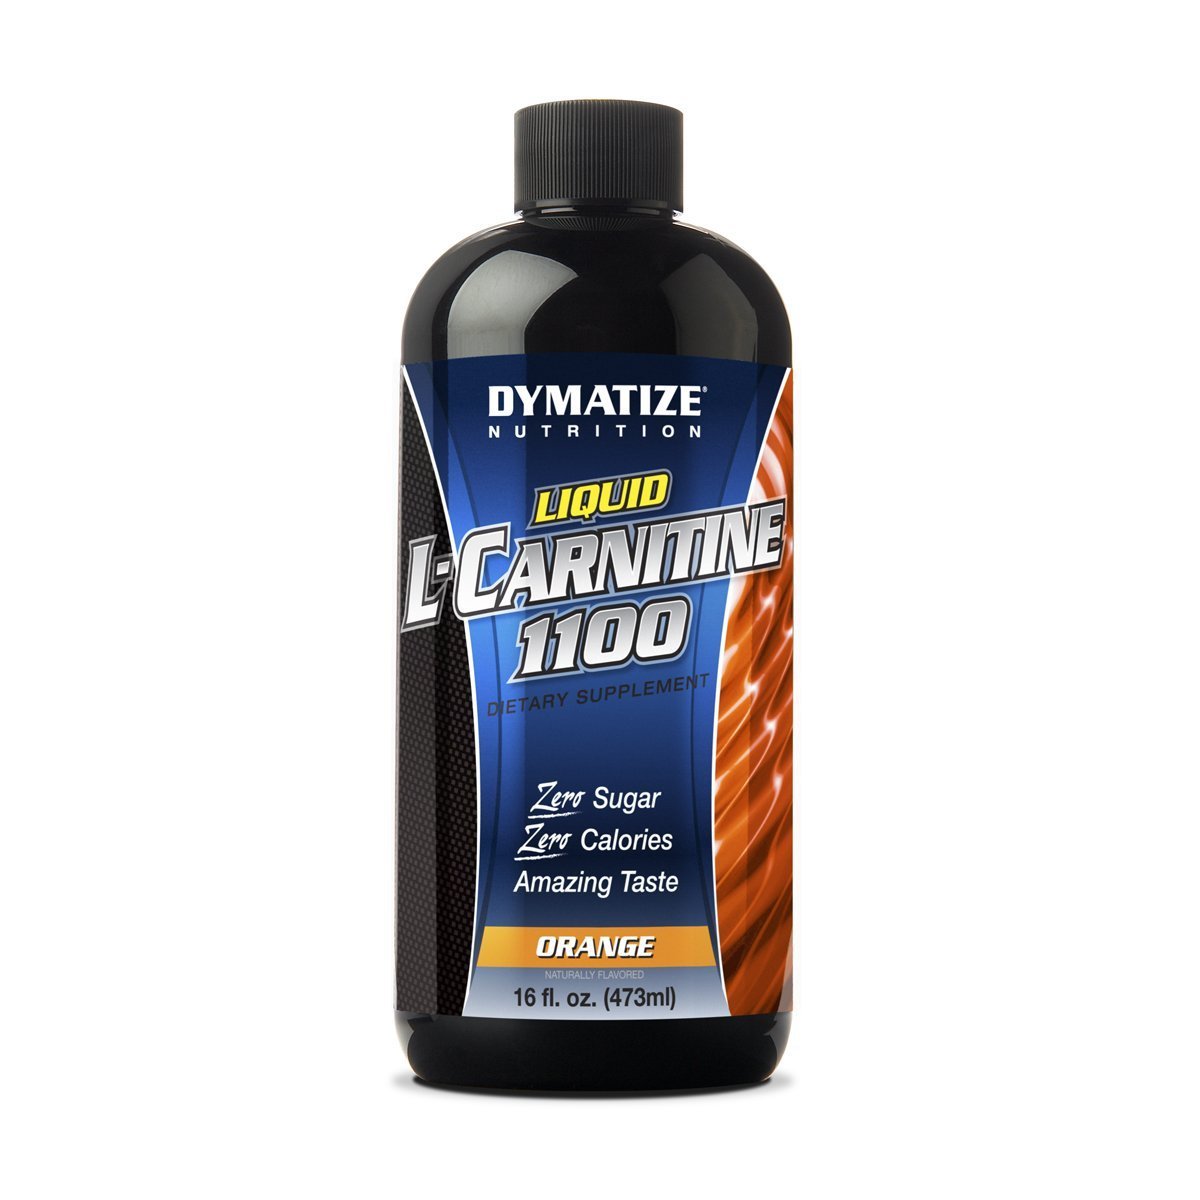 Liquid L-Carnitine 1100, 473 мл, Dymatize Nutrition. L-карнитин. Снижение веса Поддержание здоровья Детоксикация Стрессоустойчивость Снижение холестерина Антиоксидантные свойства 